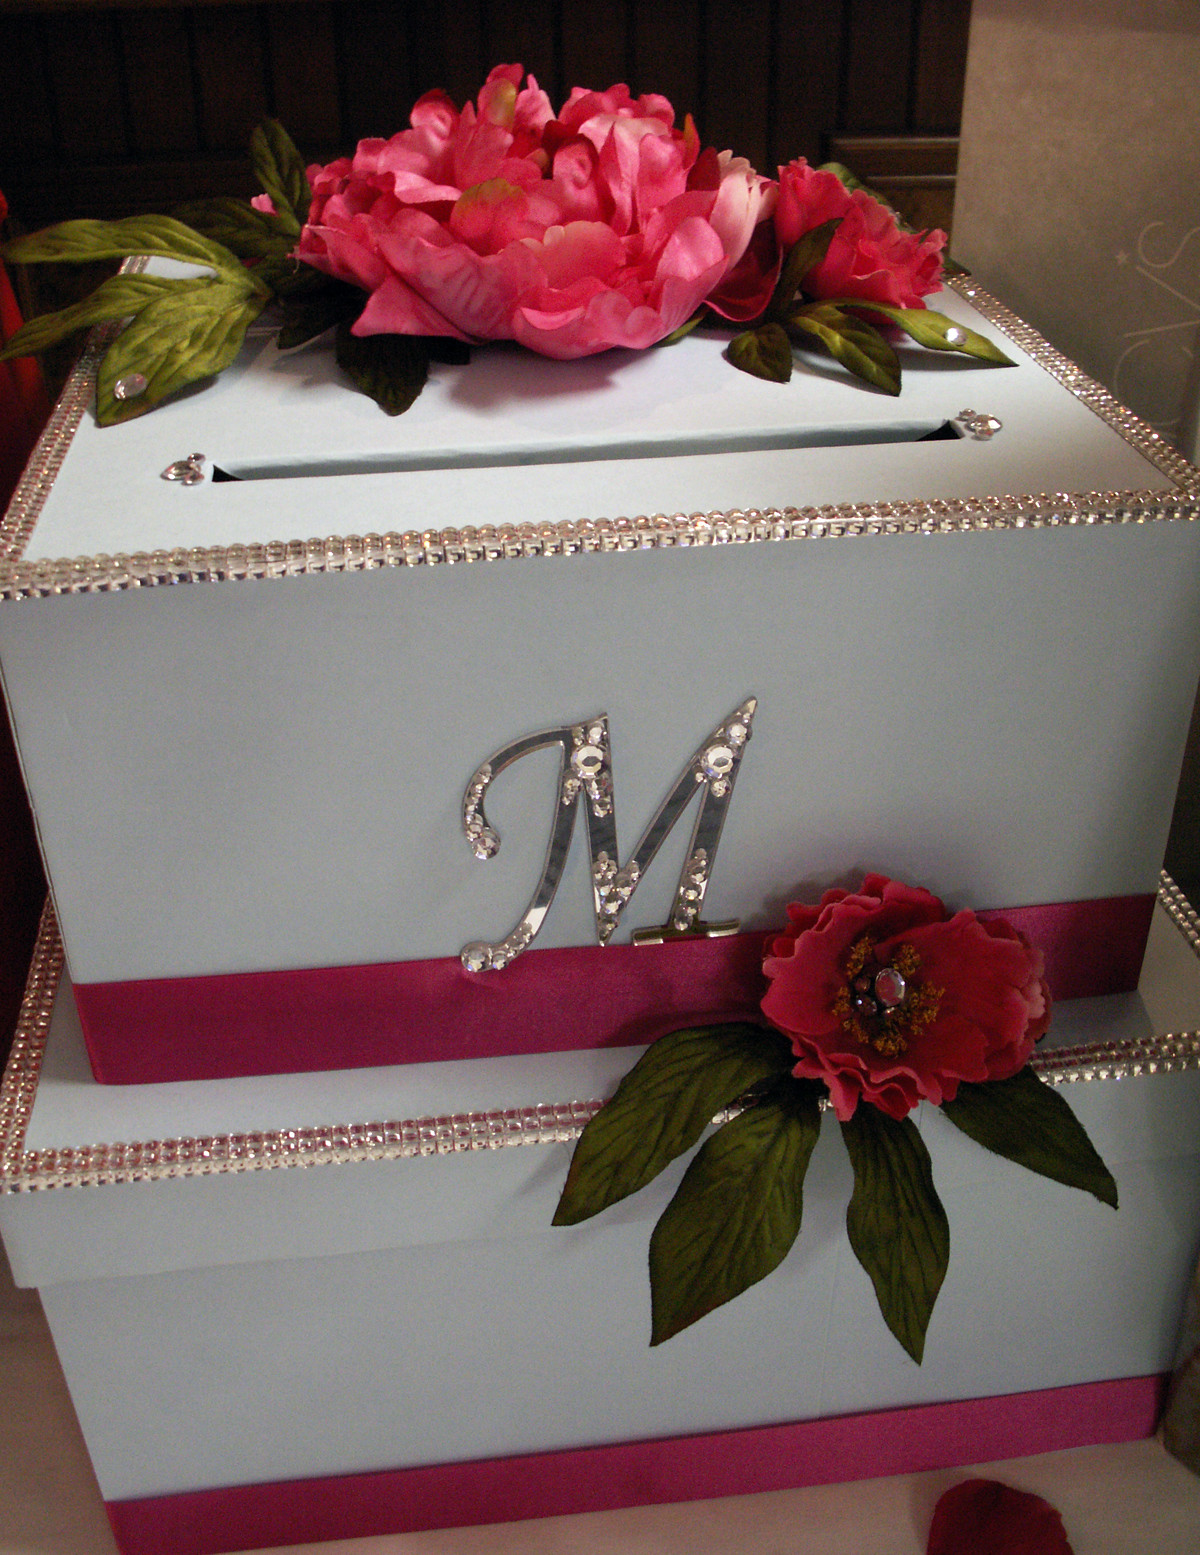 Best ideas about DIY Wedding Card Box Ideas
. Save or Pin DIY Wedding Card Box Project Now.